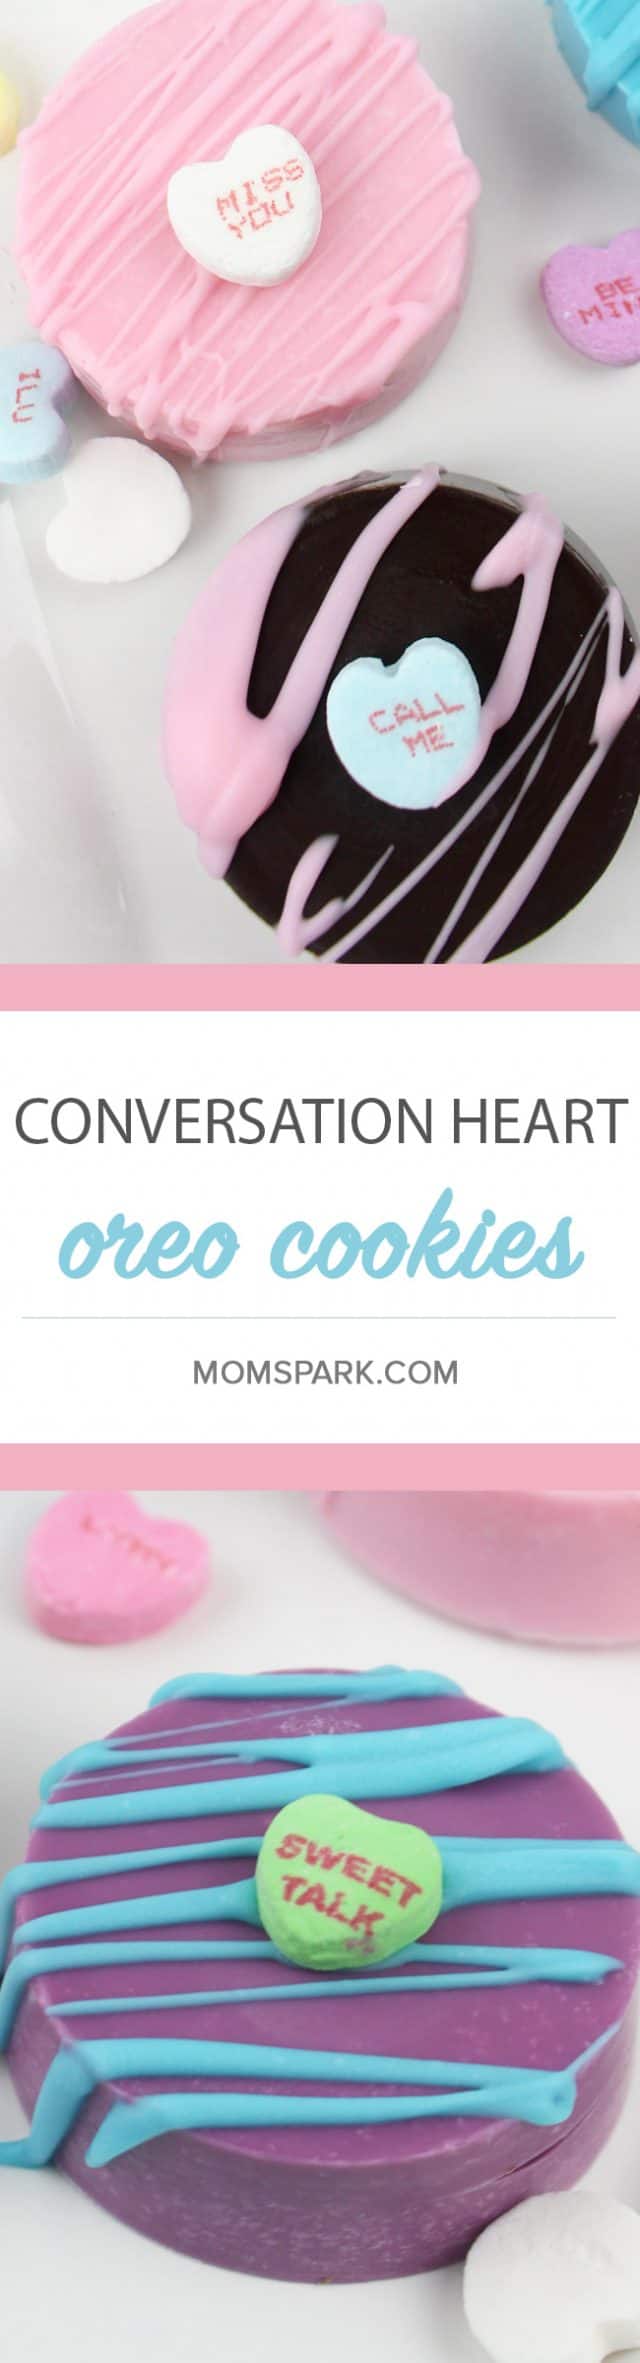 Valentine's Day Conversation Heart Oreo Cookie Dessert Recipe